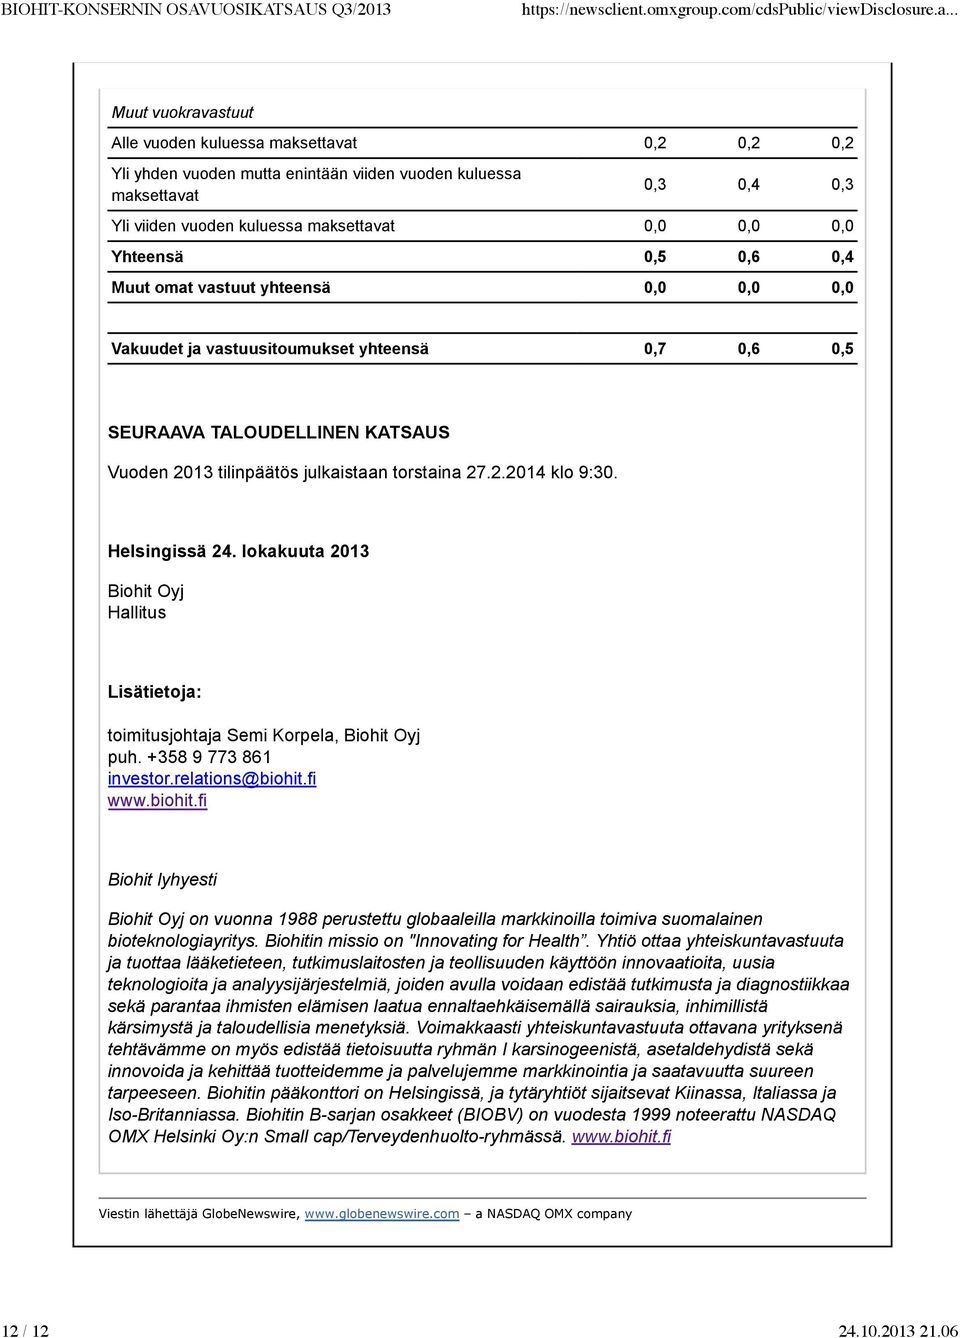 Helsingissä 24. lokakuuta 2013 Biohit Oyj Hallitus Lisätietoja: toimitusjohtaja Semi Korpela, Biohit Oyj puh. +358 9 773 861 investor.relations@biohit.